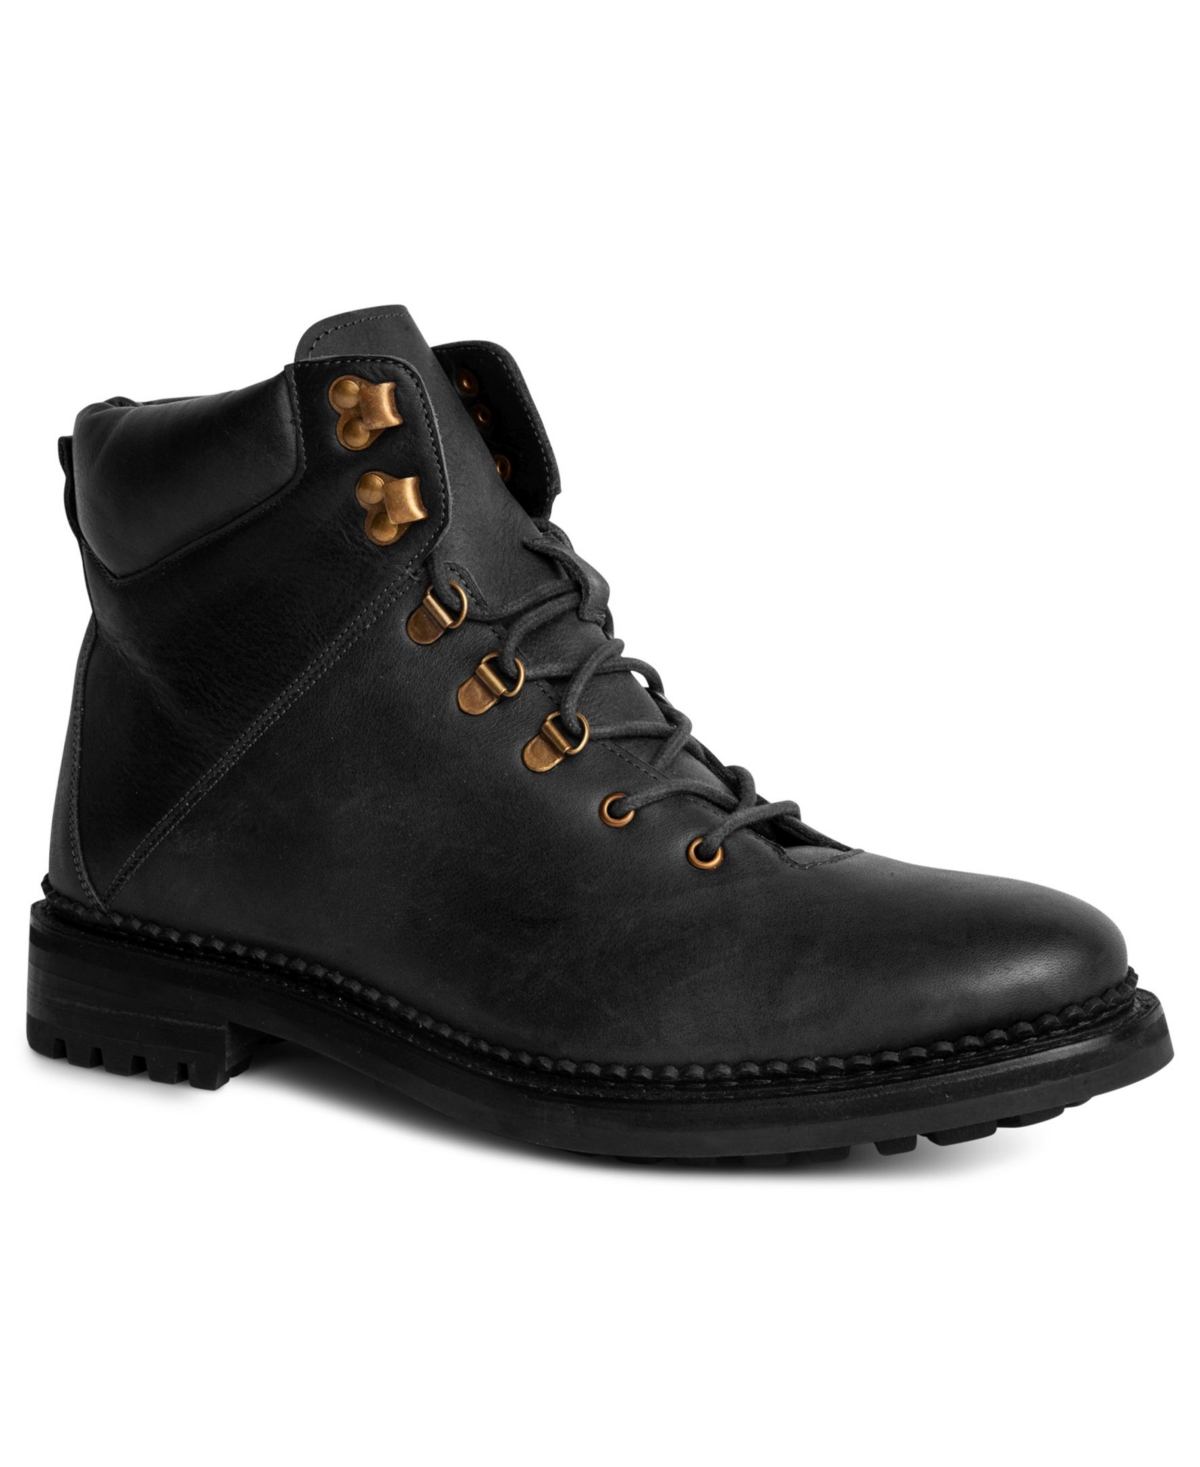 Rockefeller Men's Leather Hiking Boots - Black